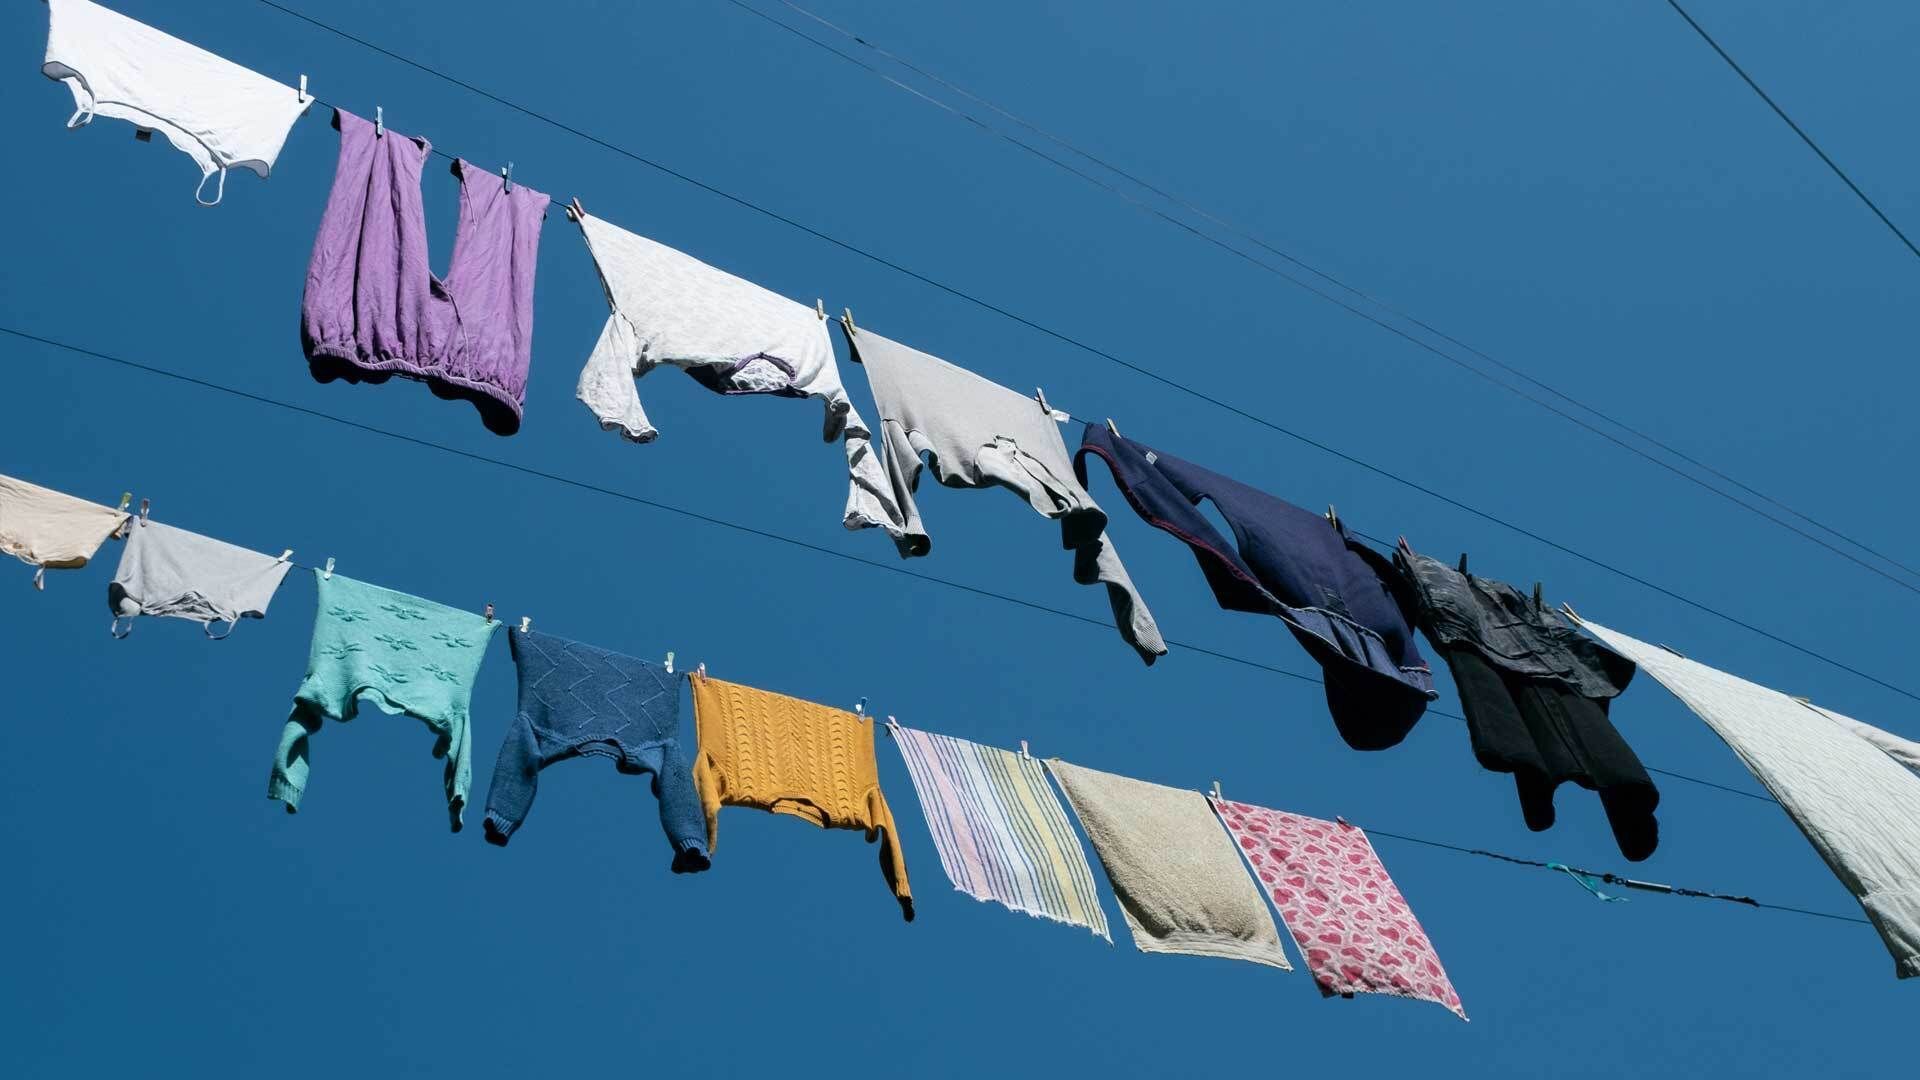 Wäsche aufhängen: Diese Fehler sorgen für Schimmel in der Wohnung